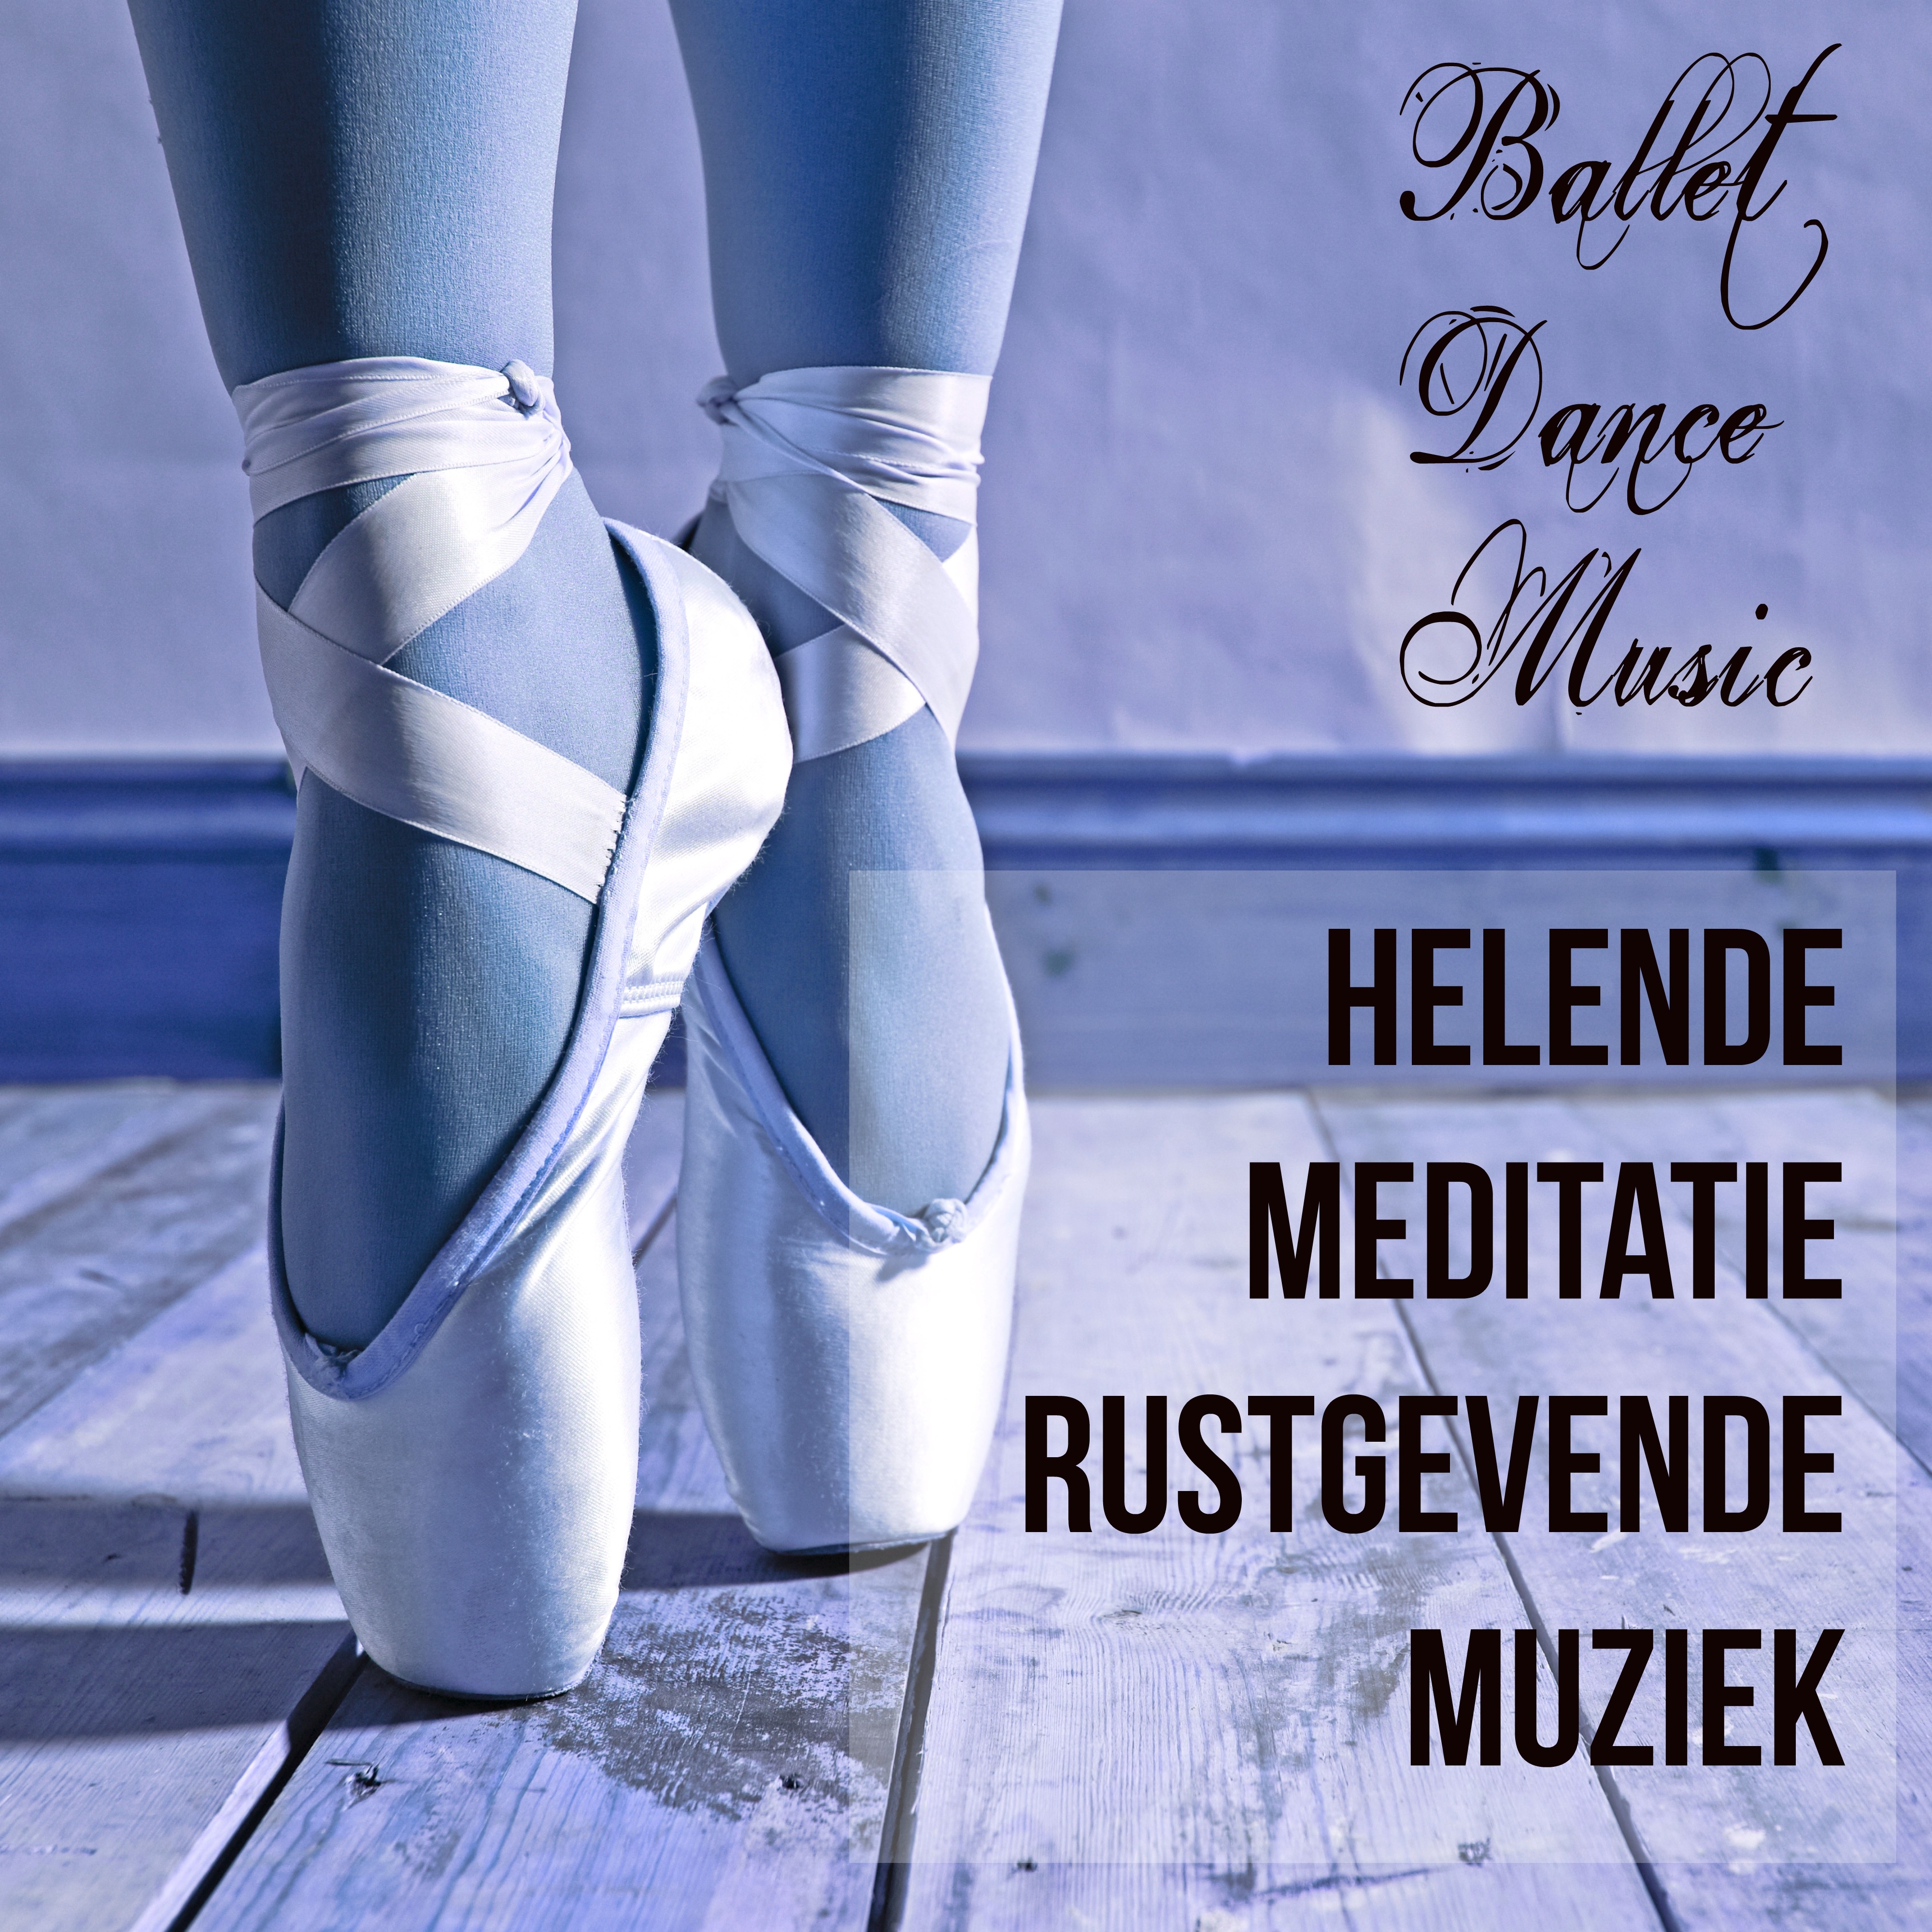 Ballet Dance Music - Helende Meditatie Rustgevende Muziek voor Balanceren Meditatie Voordelen en Klassiek Ballet